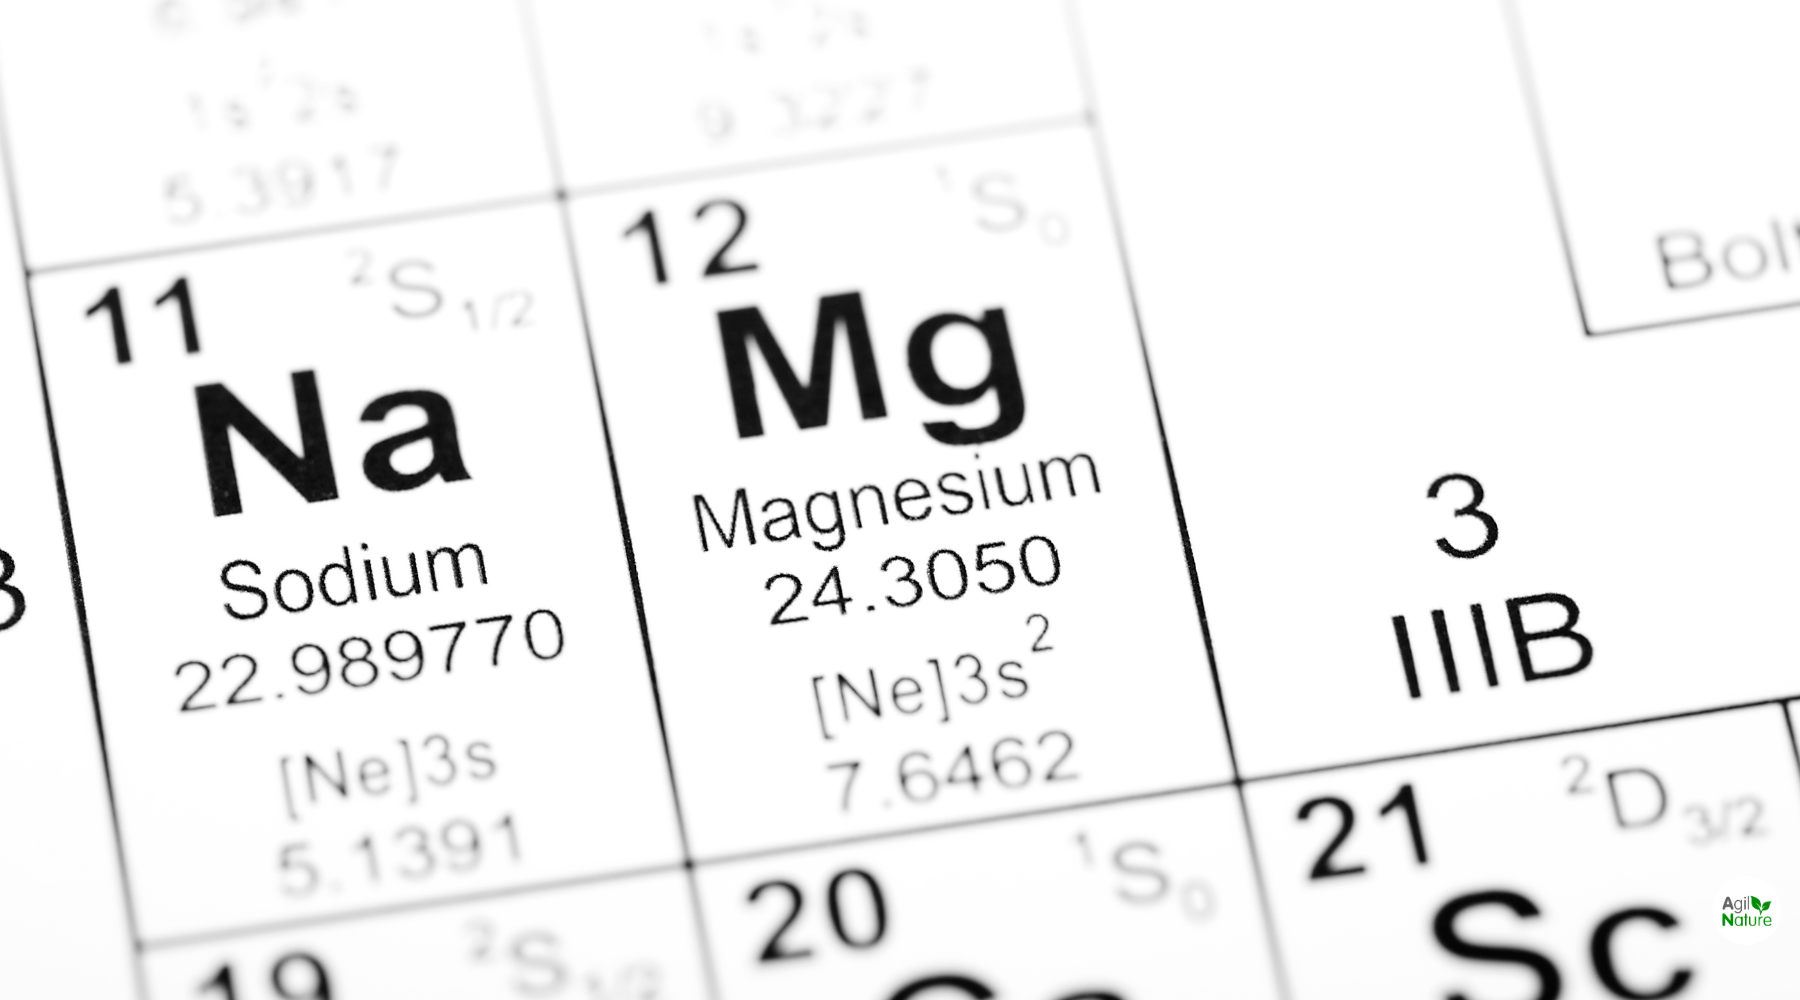 Vorteile und Nachteile der Einnahme von Magnesiumpräparaten in der veganen Ernährung